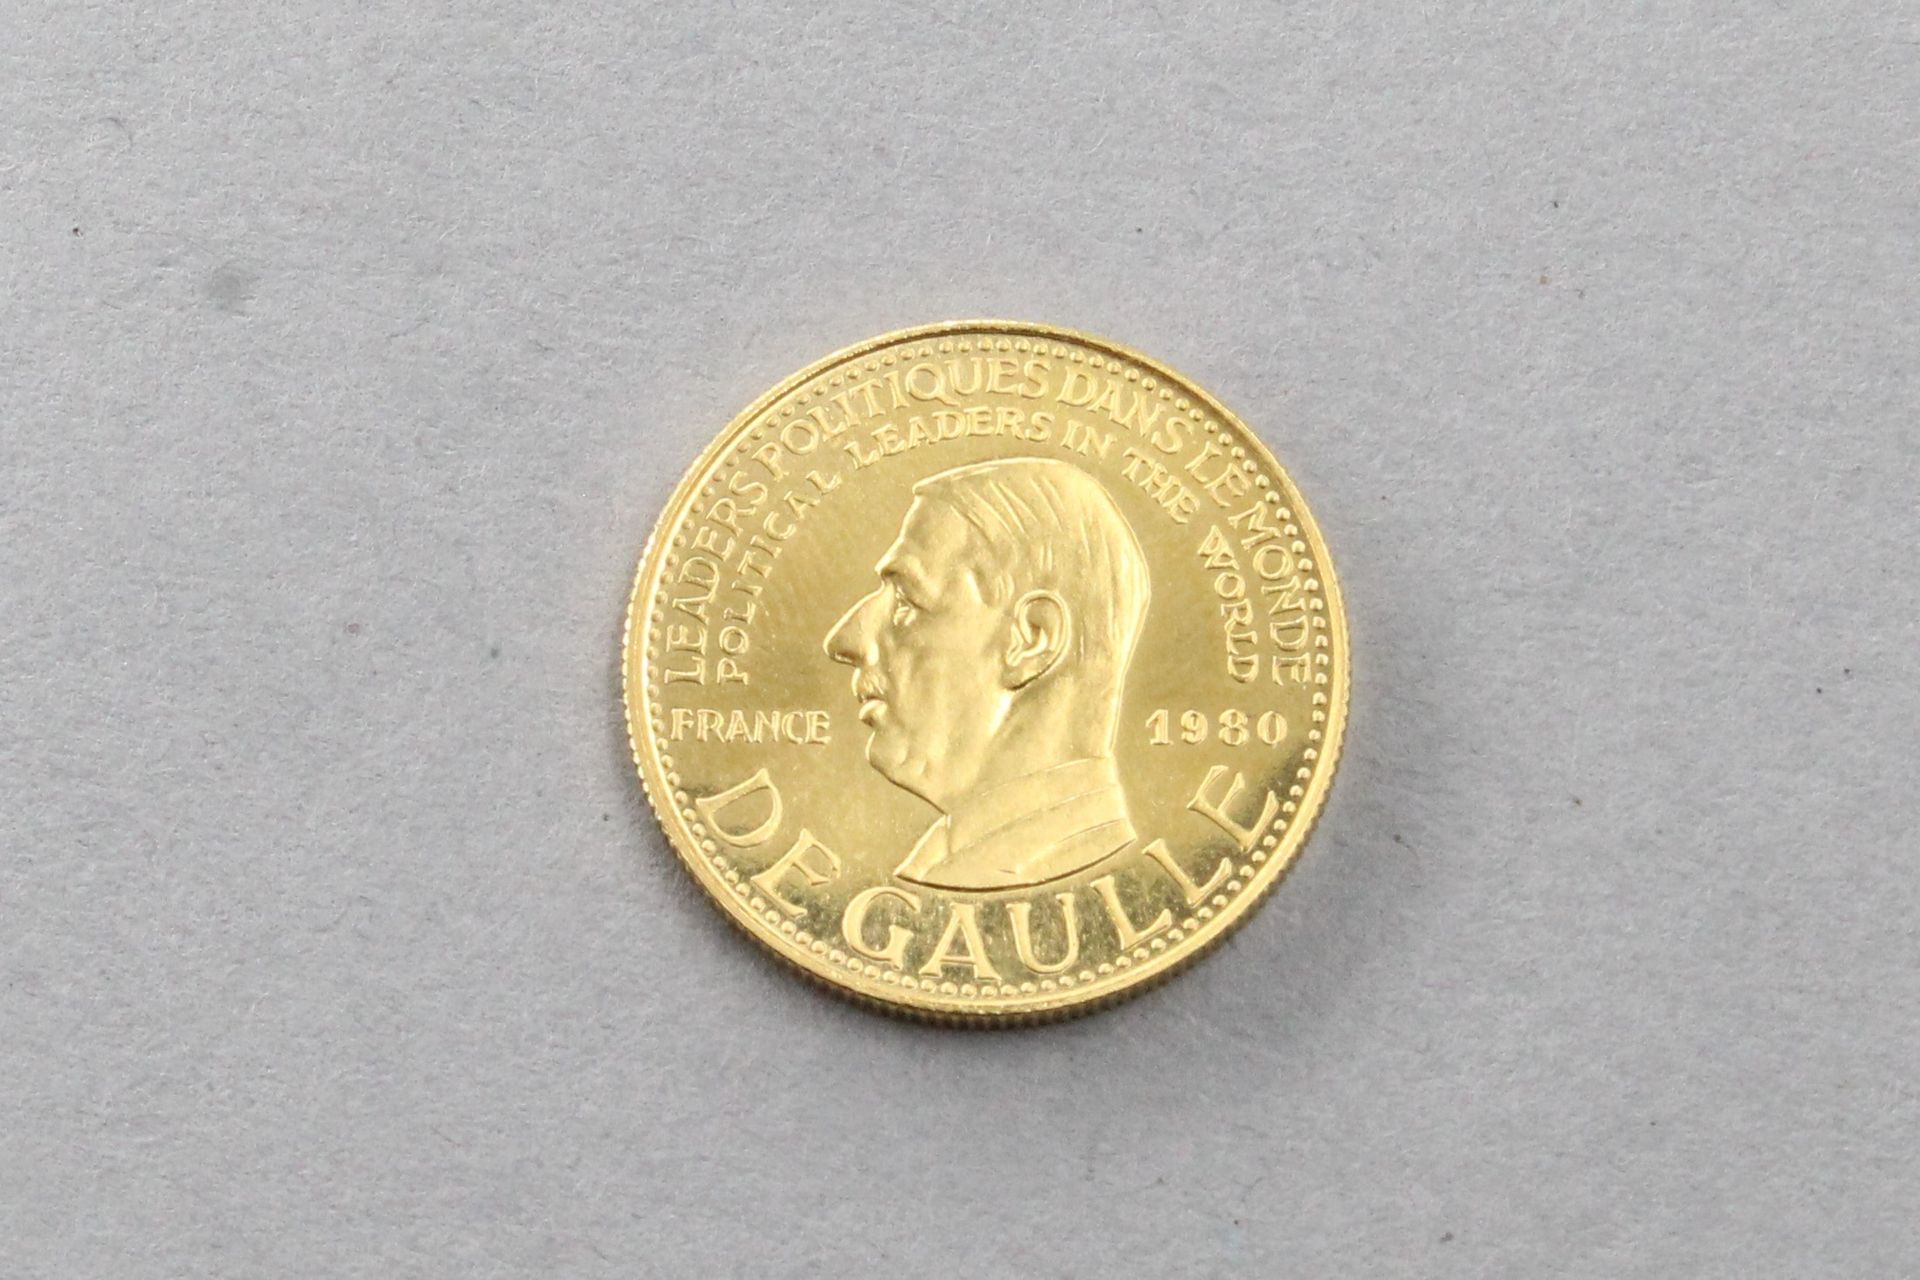 Null 印有德高望重头像的纪念金币。

SUP。

重量：5.99克。